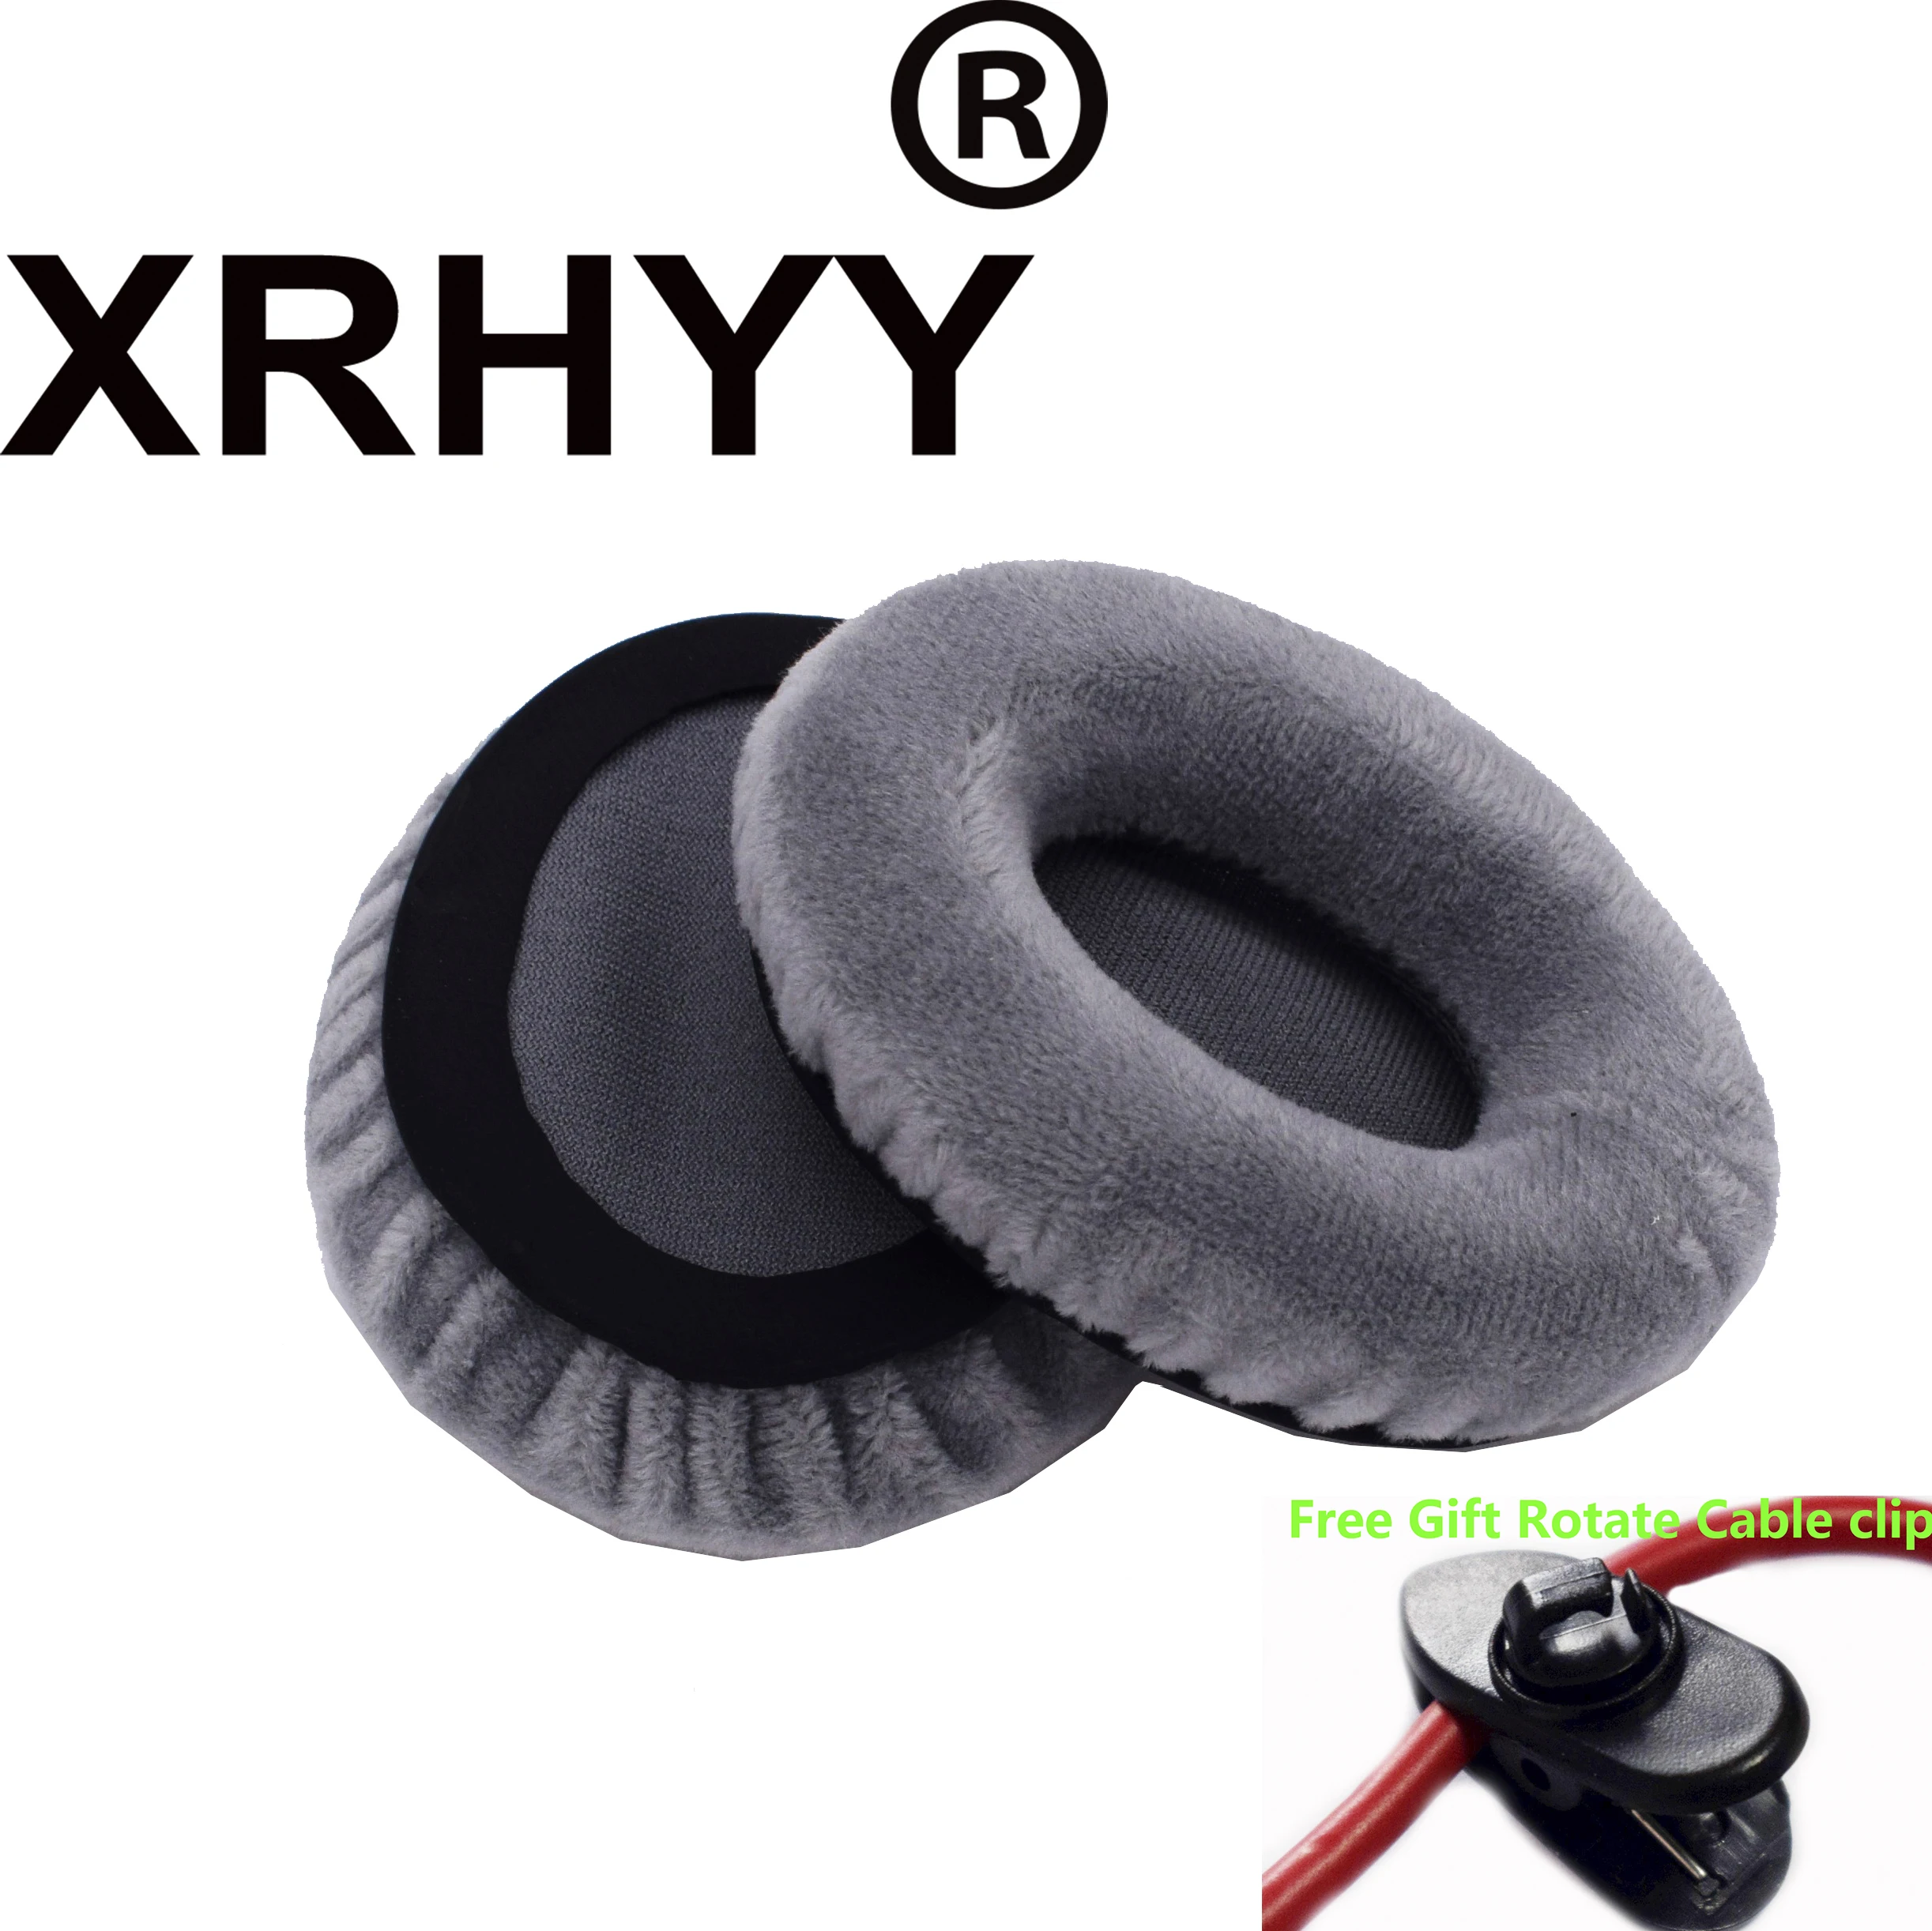 XRHYY сменные амбушюры, подушечки для наушников, бархатные подушечки для наушников Sennheiser Momentum на наушниках+ свободное вращение, зажим для кабеля